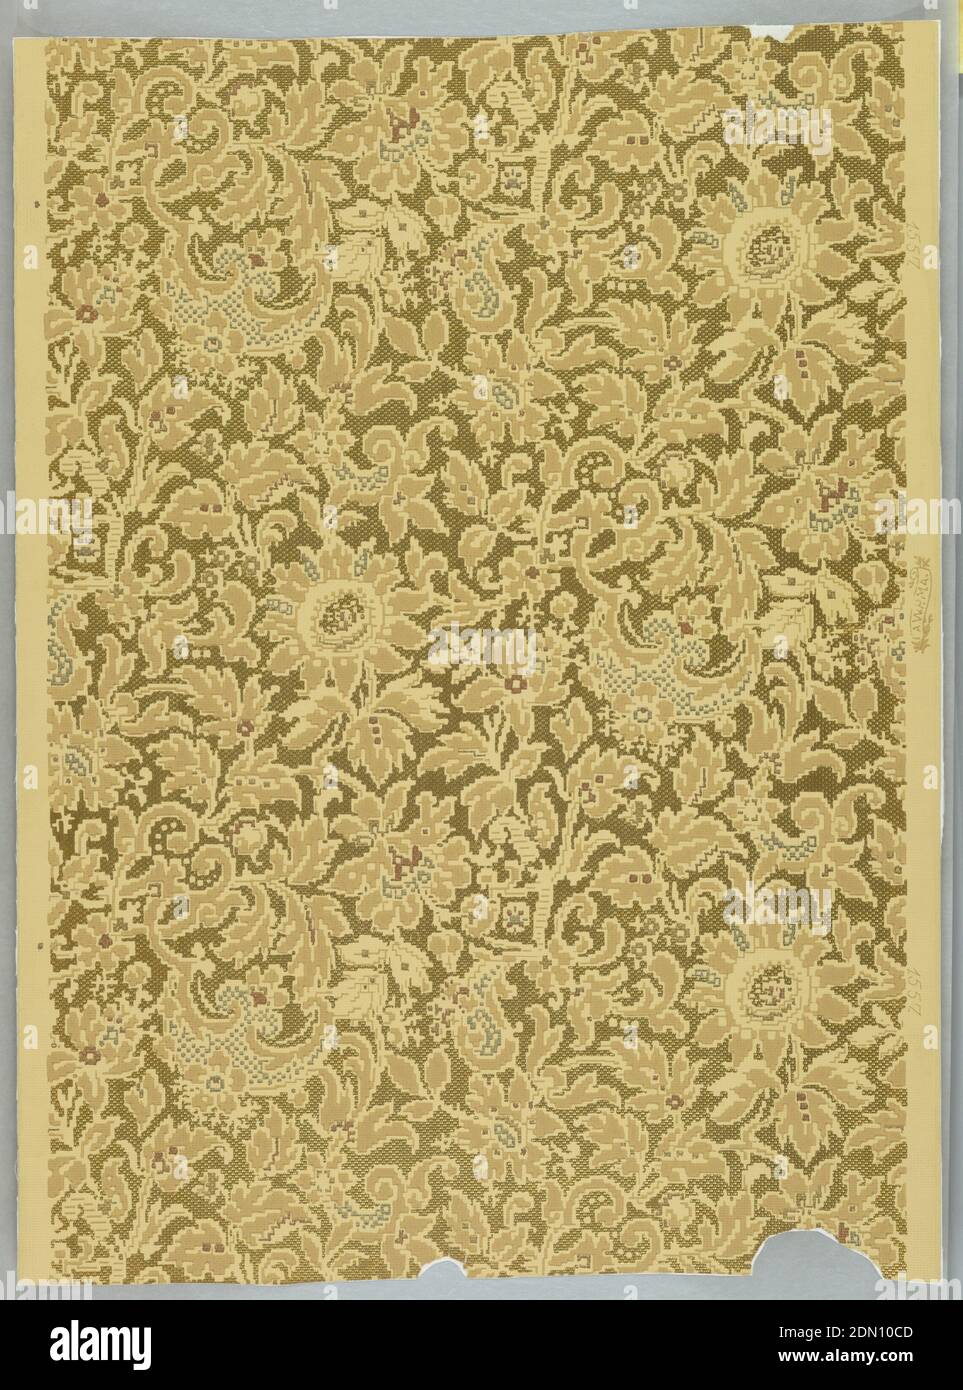 Sidewall, American Wall Paper Manufacturers' Association, 1879–1887, maschinenbedruckt auf Papier, auf einem hellgelben Grund, ist ein durchgehendes Blumen- und Laubmuster in sehr grau gefärbten Braun-, Blau- und Rottönen gedruckt. Geprägte und vergoldete Bereiche zwischen dem Muster, um einen gewebten Boden zu suggerieren. Eine imitierte Brokatelle., USA, 1879–87, Wallcoverings, Sidewall Stockfoto